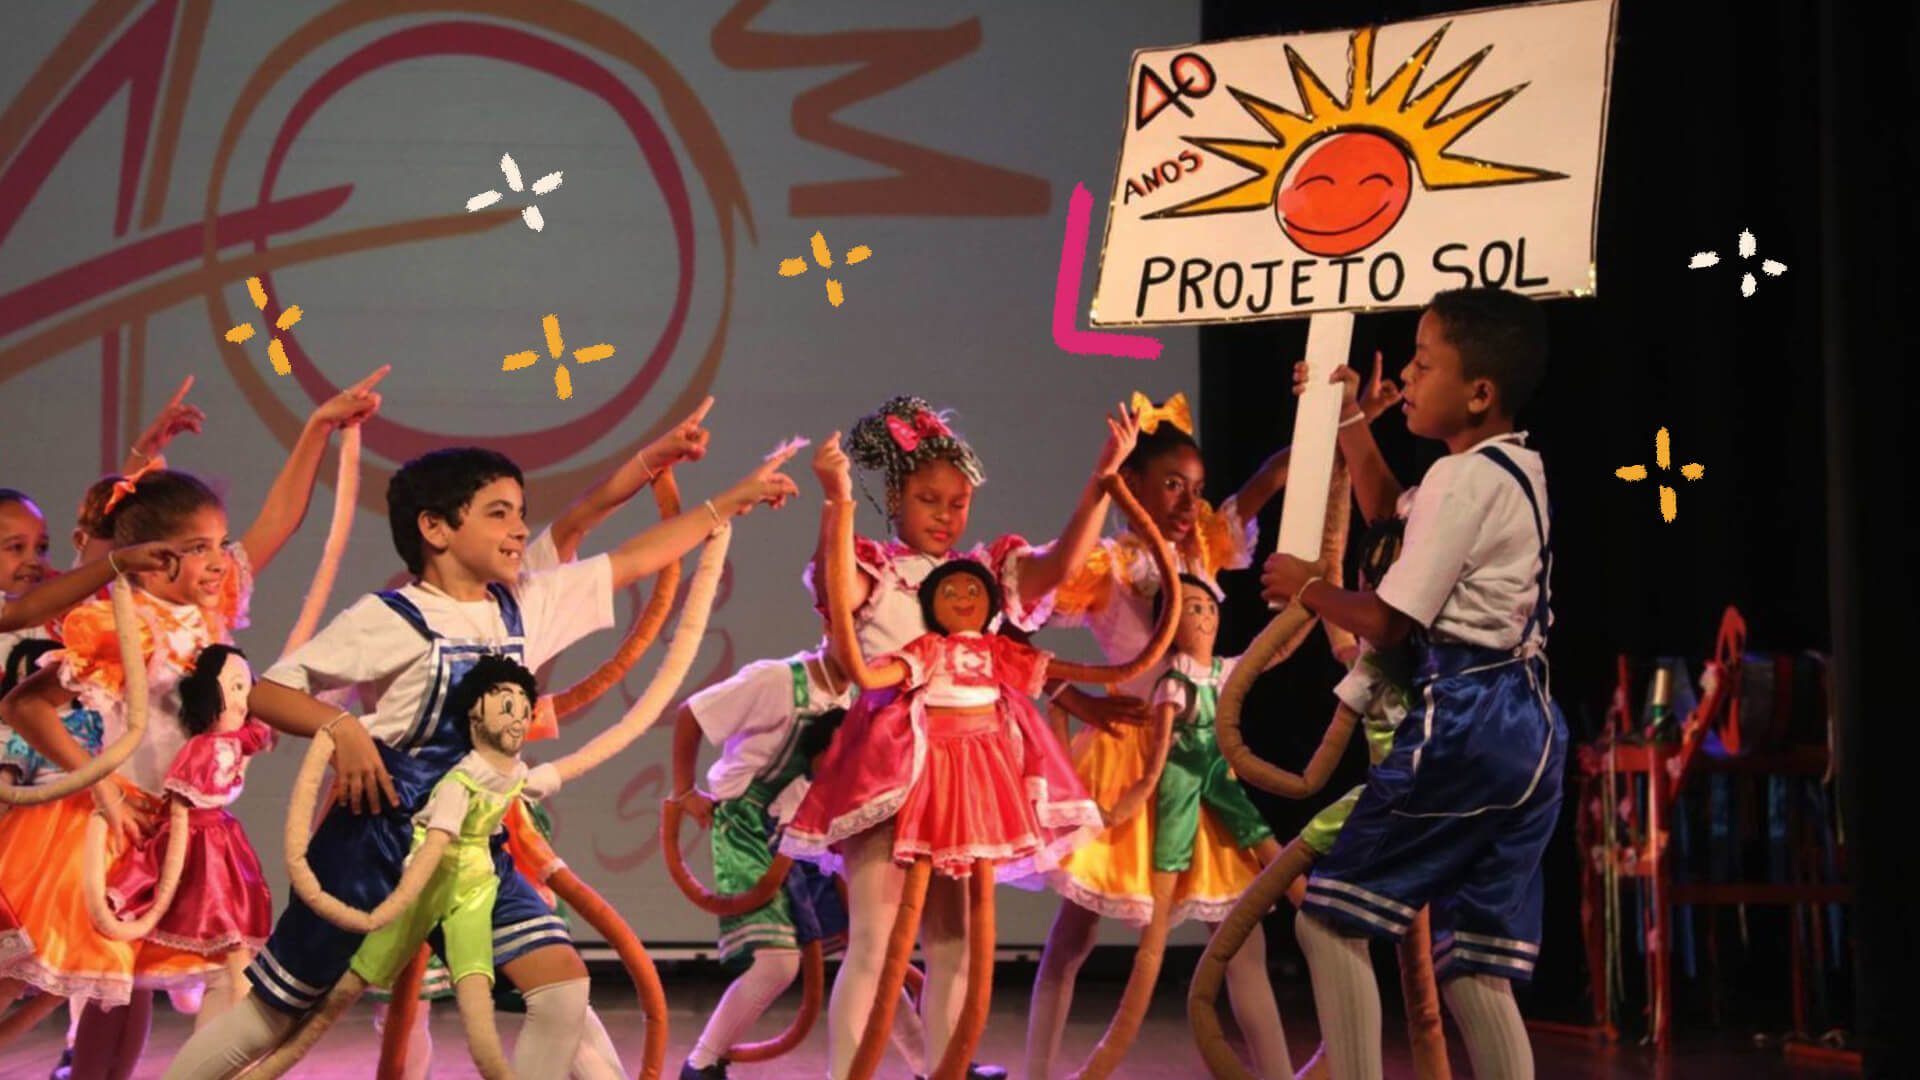 Na foto, um grupo multiétnico de crianças dança em um palco. Na frente, um menino negro segura uma placa escrito 40 anos - Projeto Sol, com o desenho de um sol sorridente. A imagem possui intervenções de rabiscos coloridos.